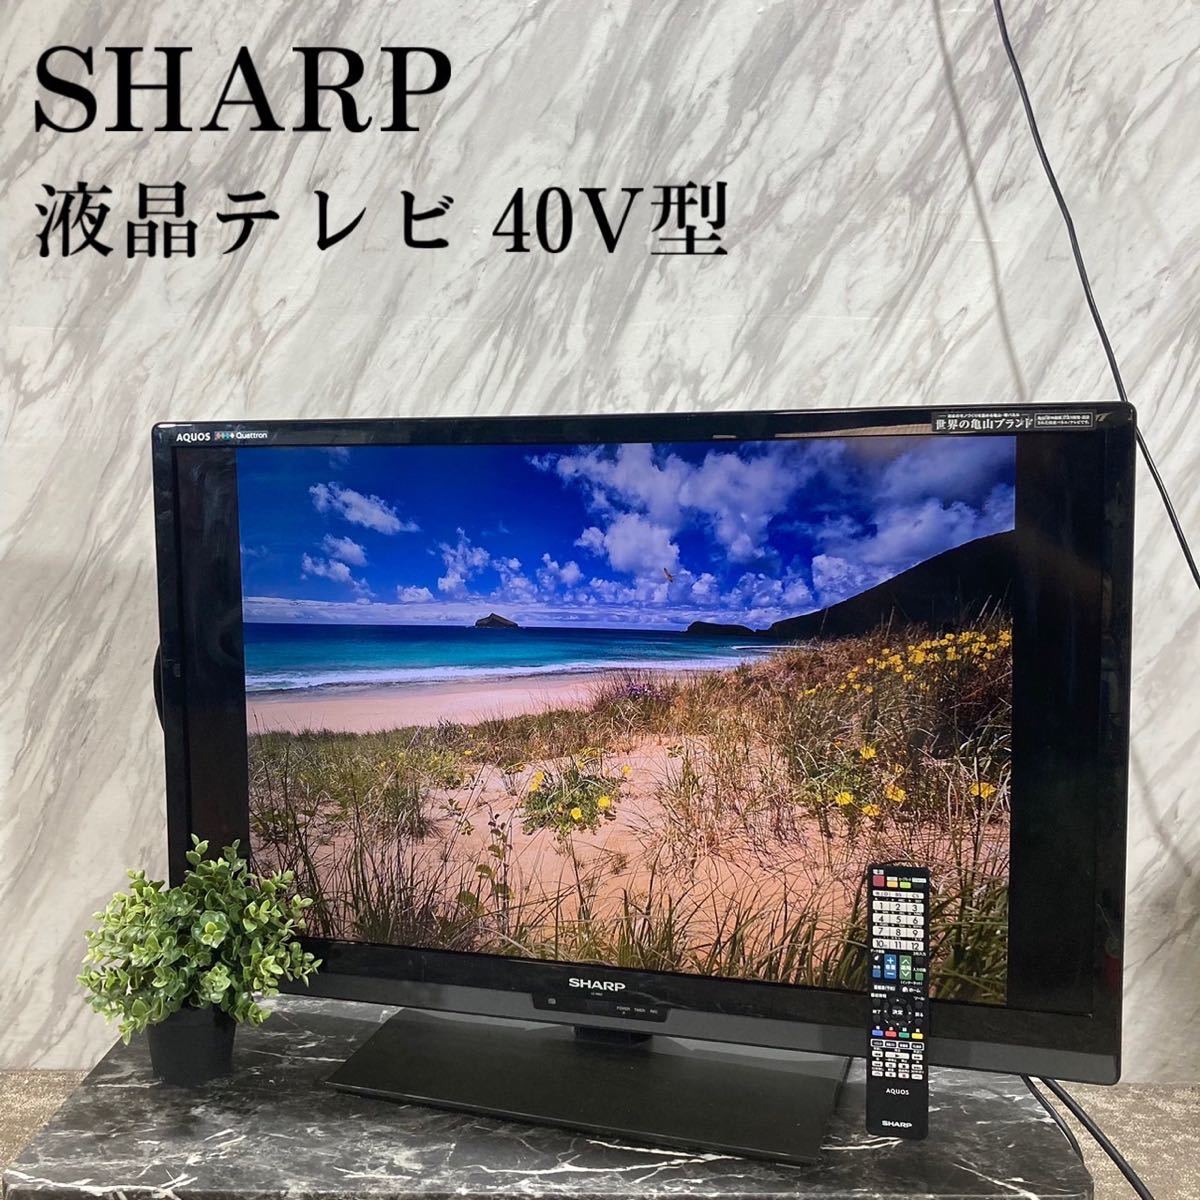 SHARP 液晶テレビ LC-40G7 40V型 AQUOS クアトロン L049